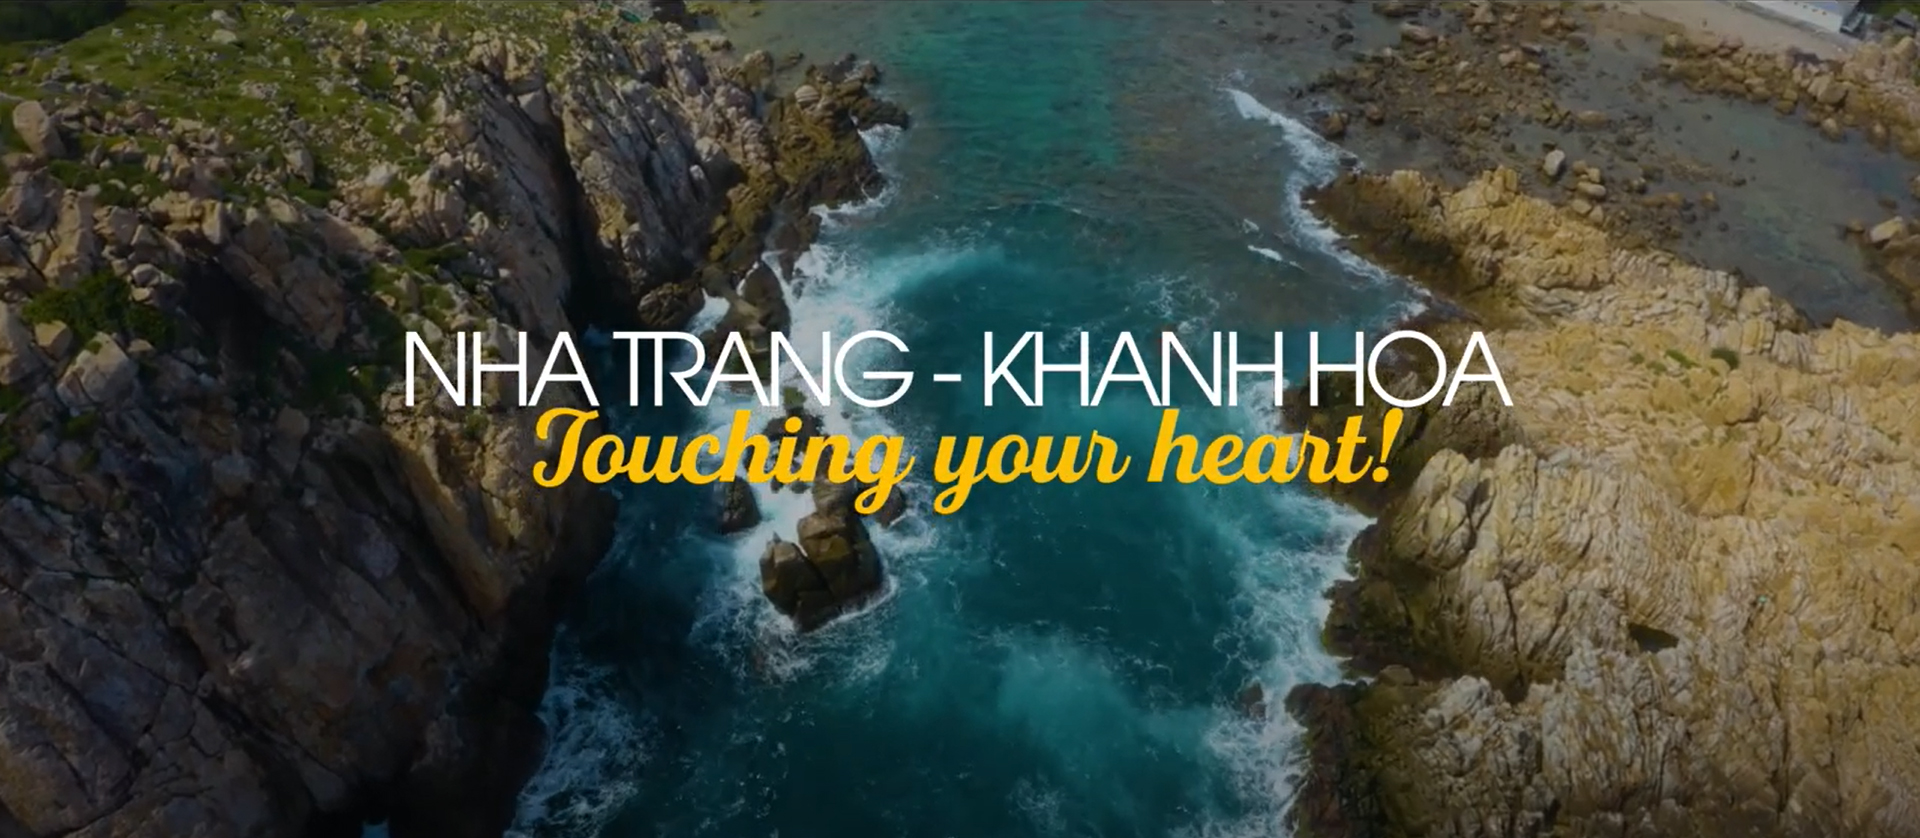 Ra mắt video clip "Nha Trang - Khanh Hoa: Touching your heart!" quảng bá thương hiệu du lịch Nha Trang ra thế giới